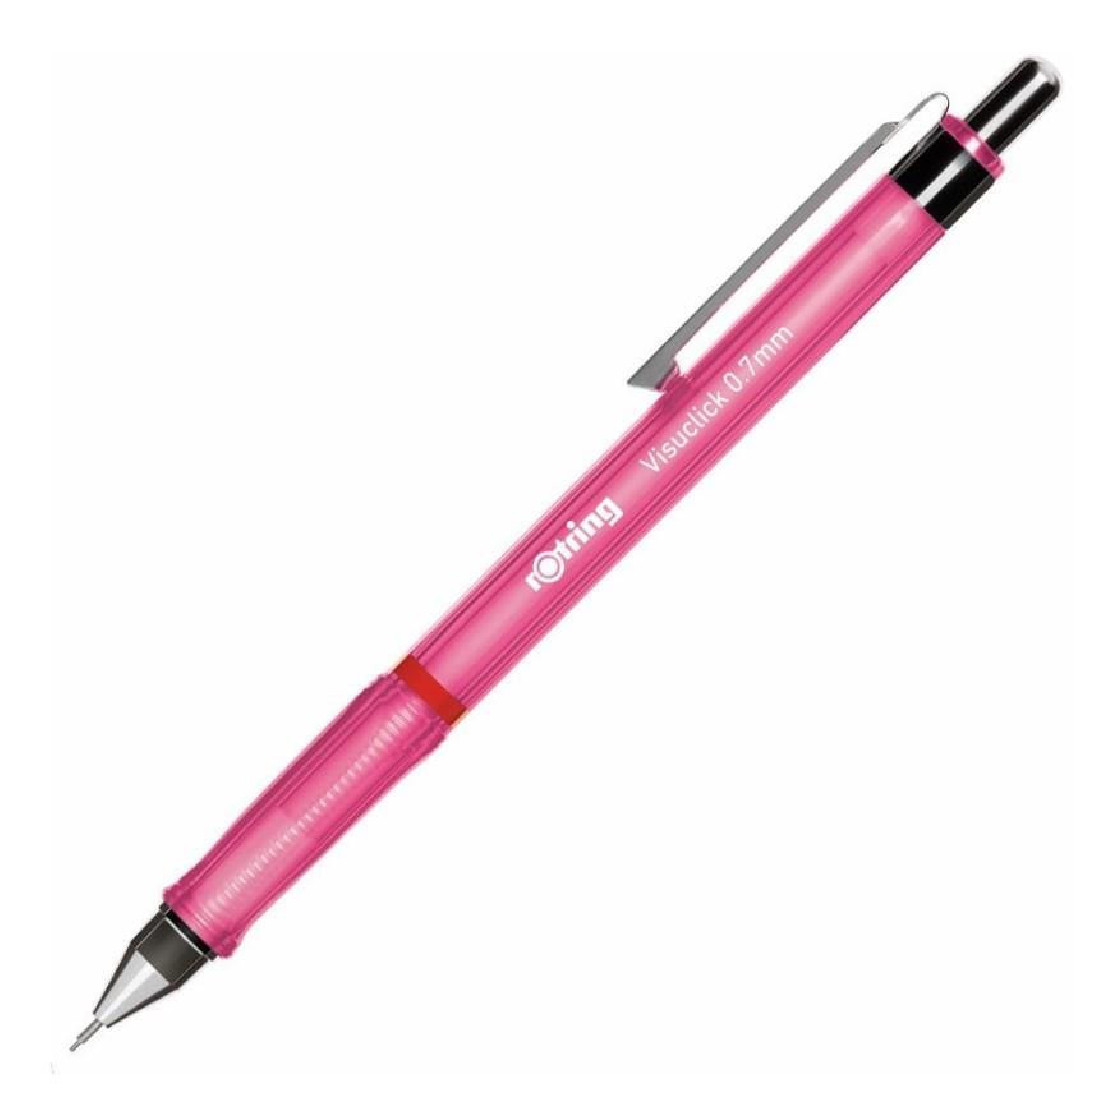 Rotring Visuclick pink mechanical pencil